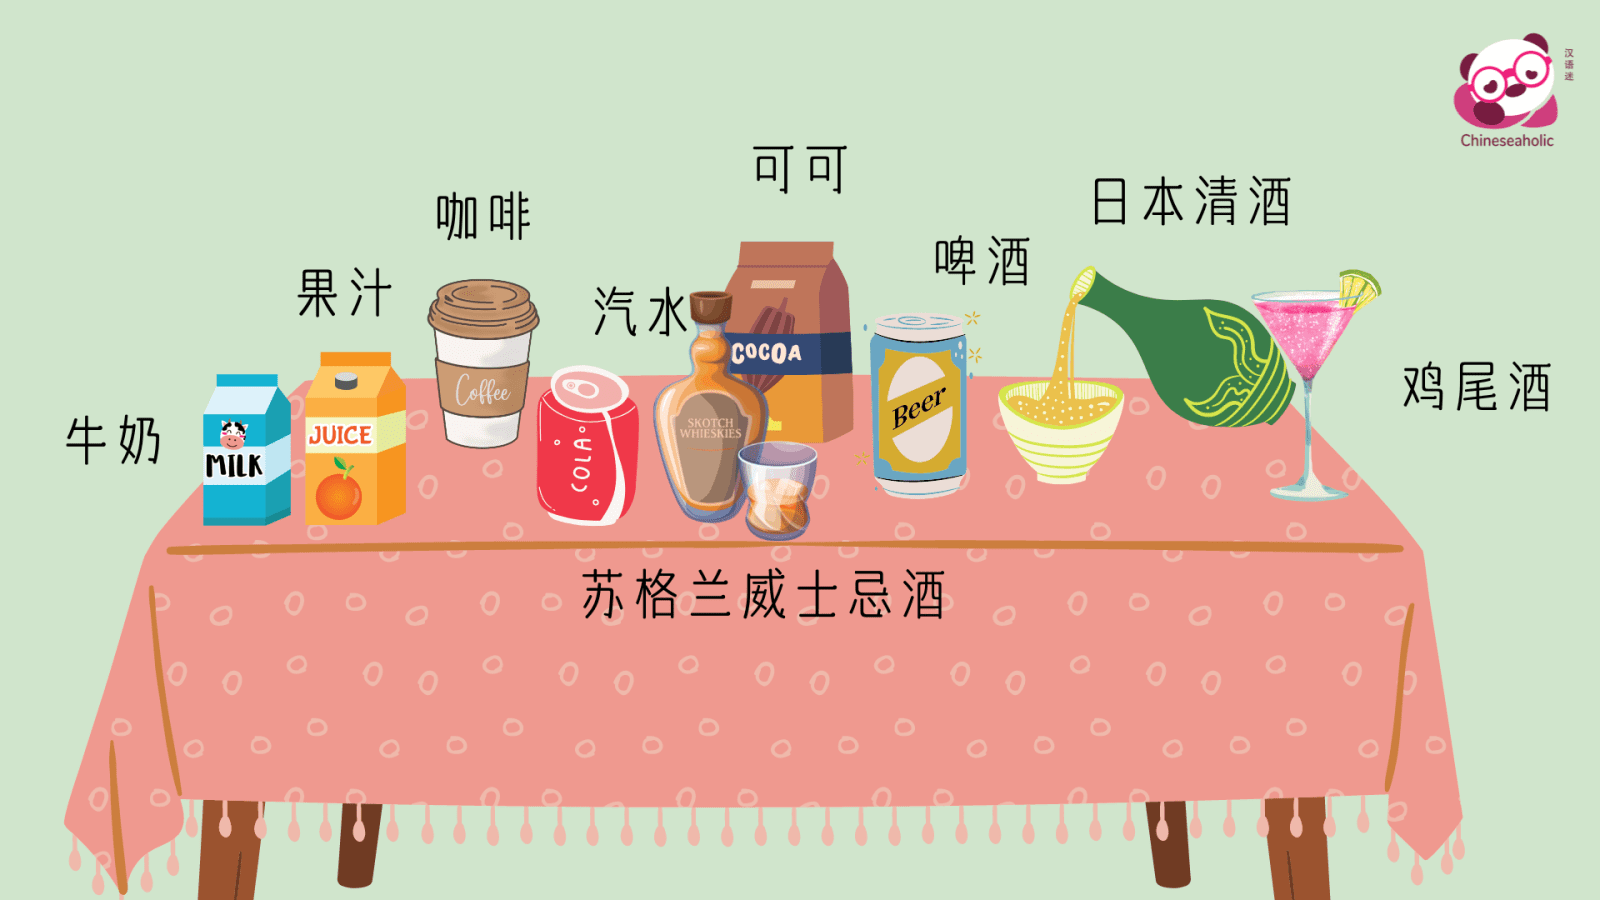 แบบทดสอบคำศัพท์ภาษาจีน เครื่องดื่ม